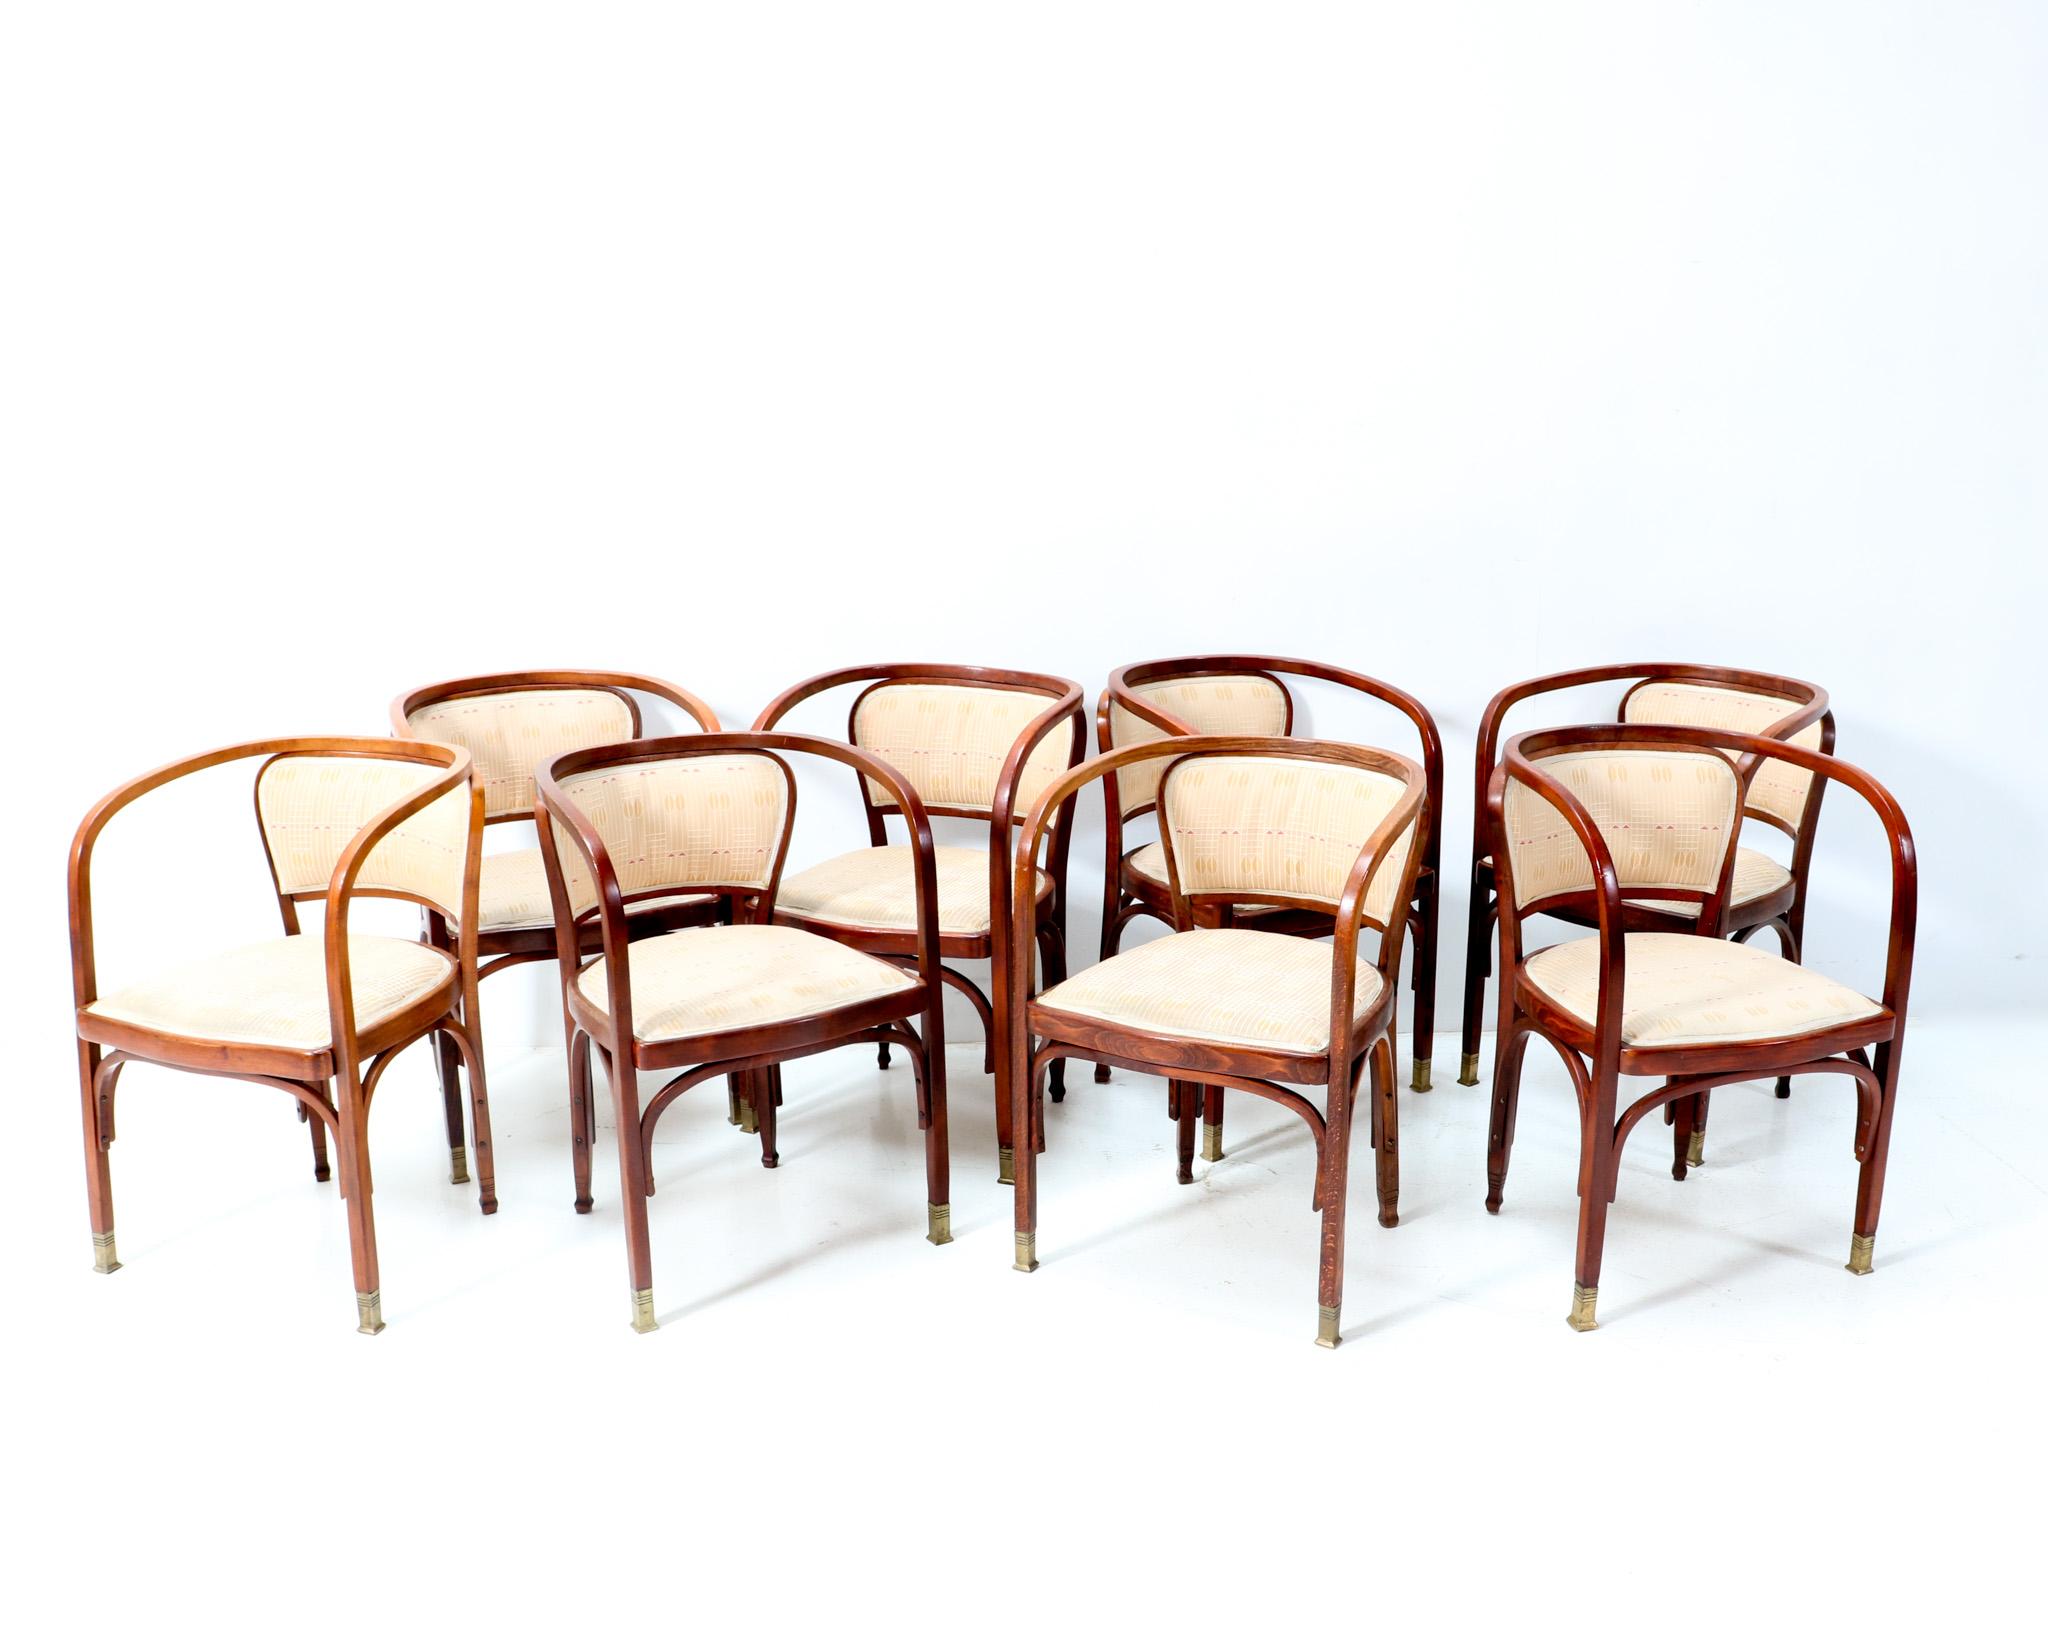 Atemberaubender Satz von acht Sesseln der Wiener Secession Modell 715F.
Design von Gustav Siegel für Jacob & Josef Kohn.
Auffälliges österreichisches Design aus den 1900er Jahren.
Lackierte Bugholzrahmen aus massiver Buche mit Beinen, die in